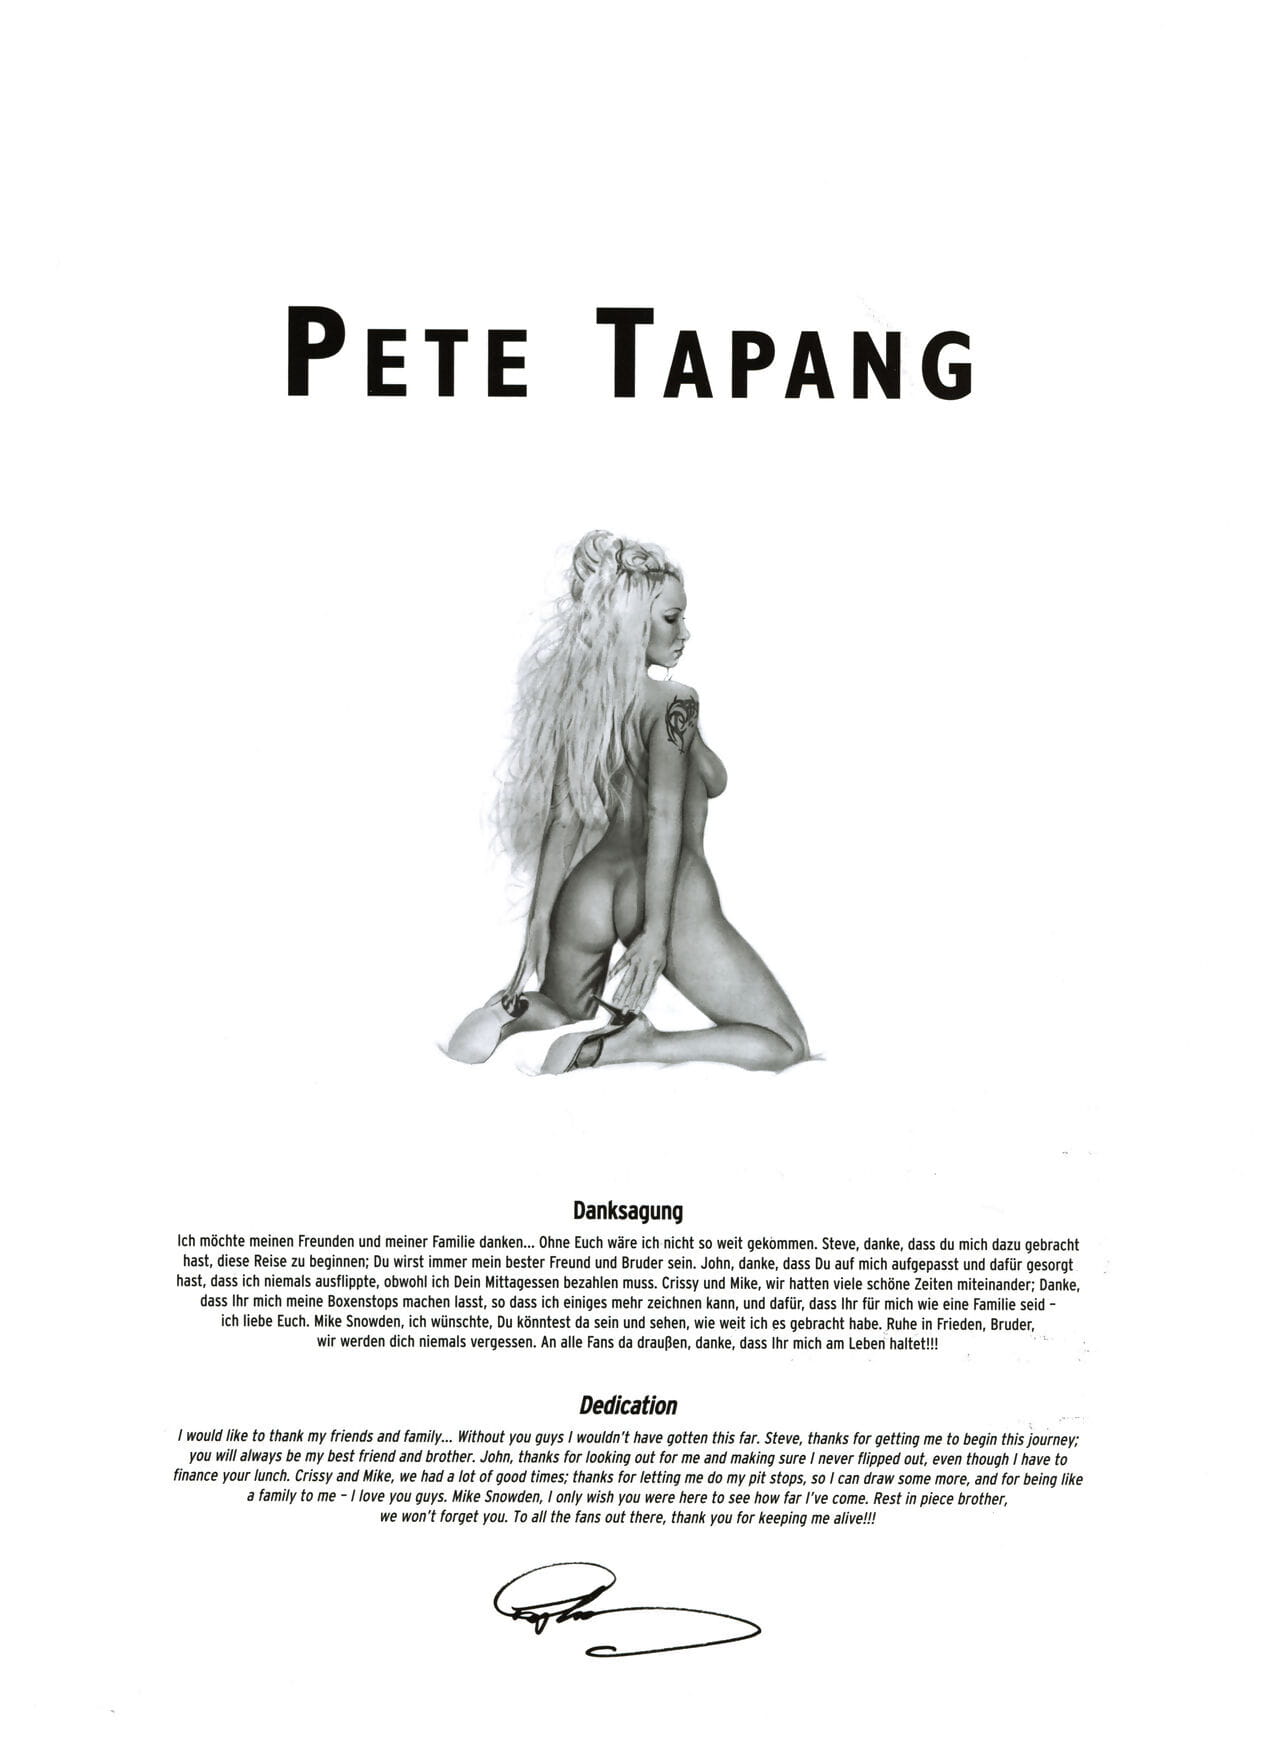 美術 プレミア #11 pete タパン page 1